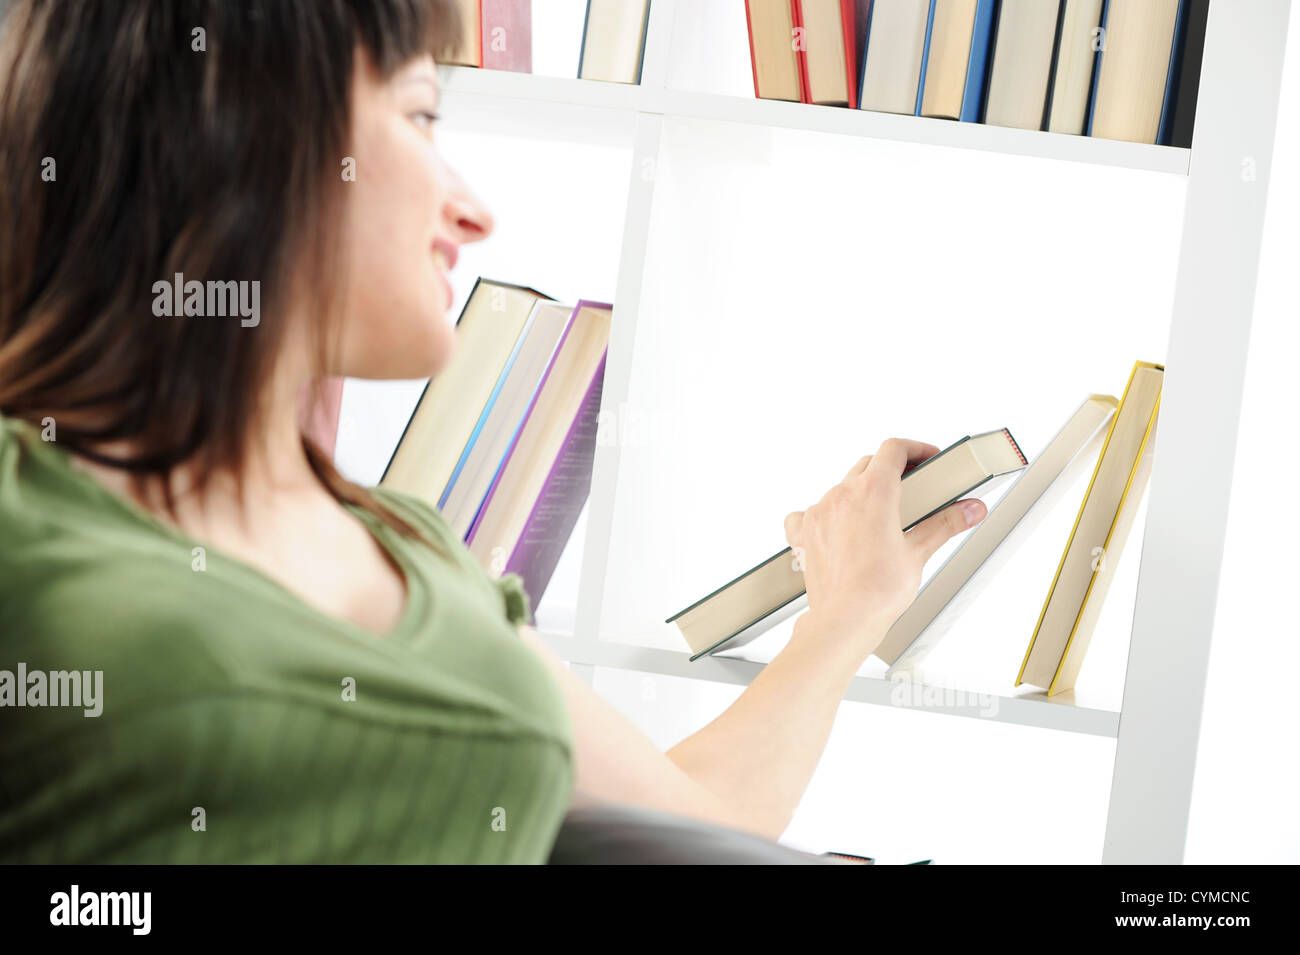 junge Frau auf der Suche nach einem Buch im Bücherregal, ähnlichen Fotos auf meinem portfolio Stockfoto